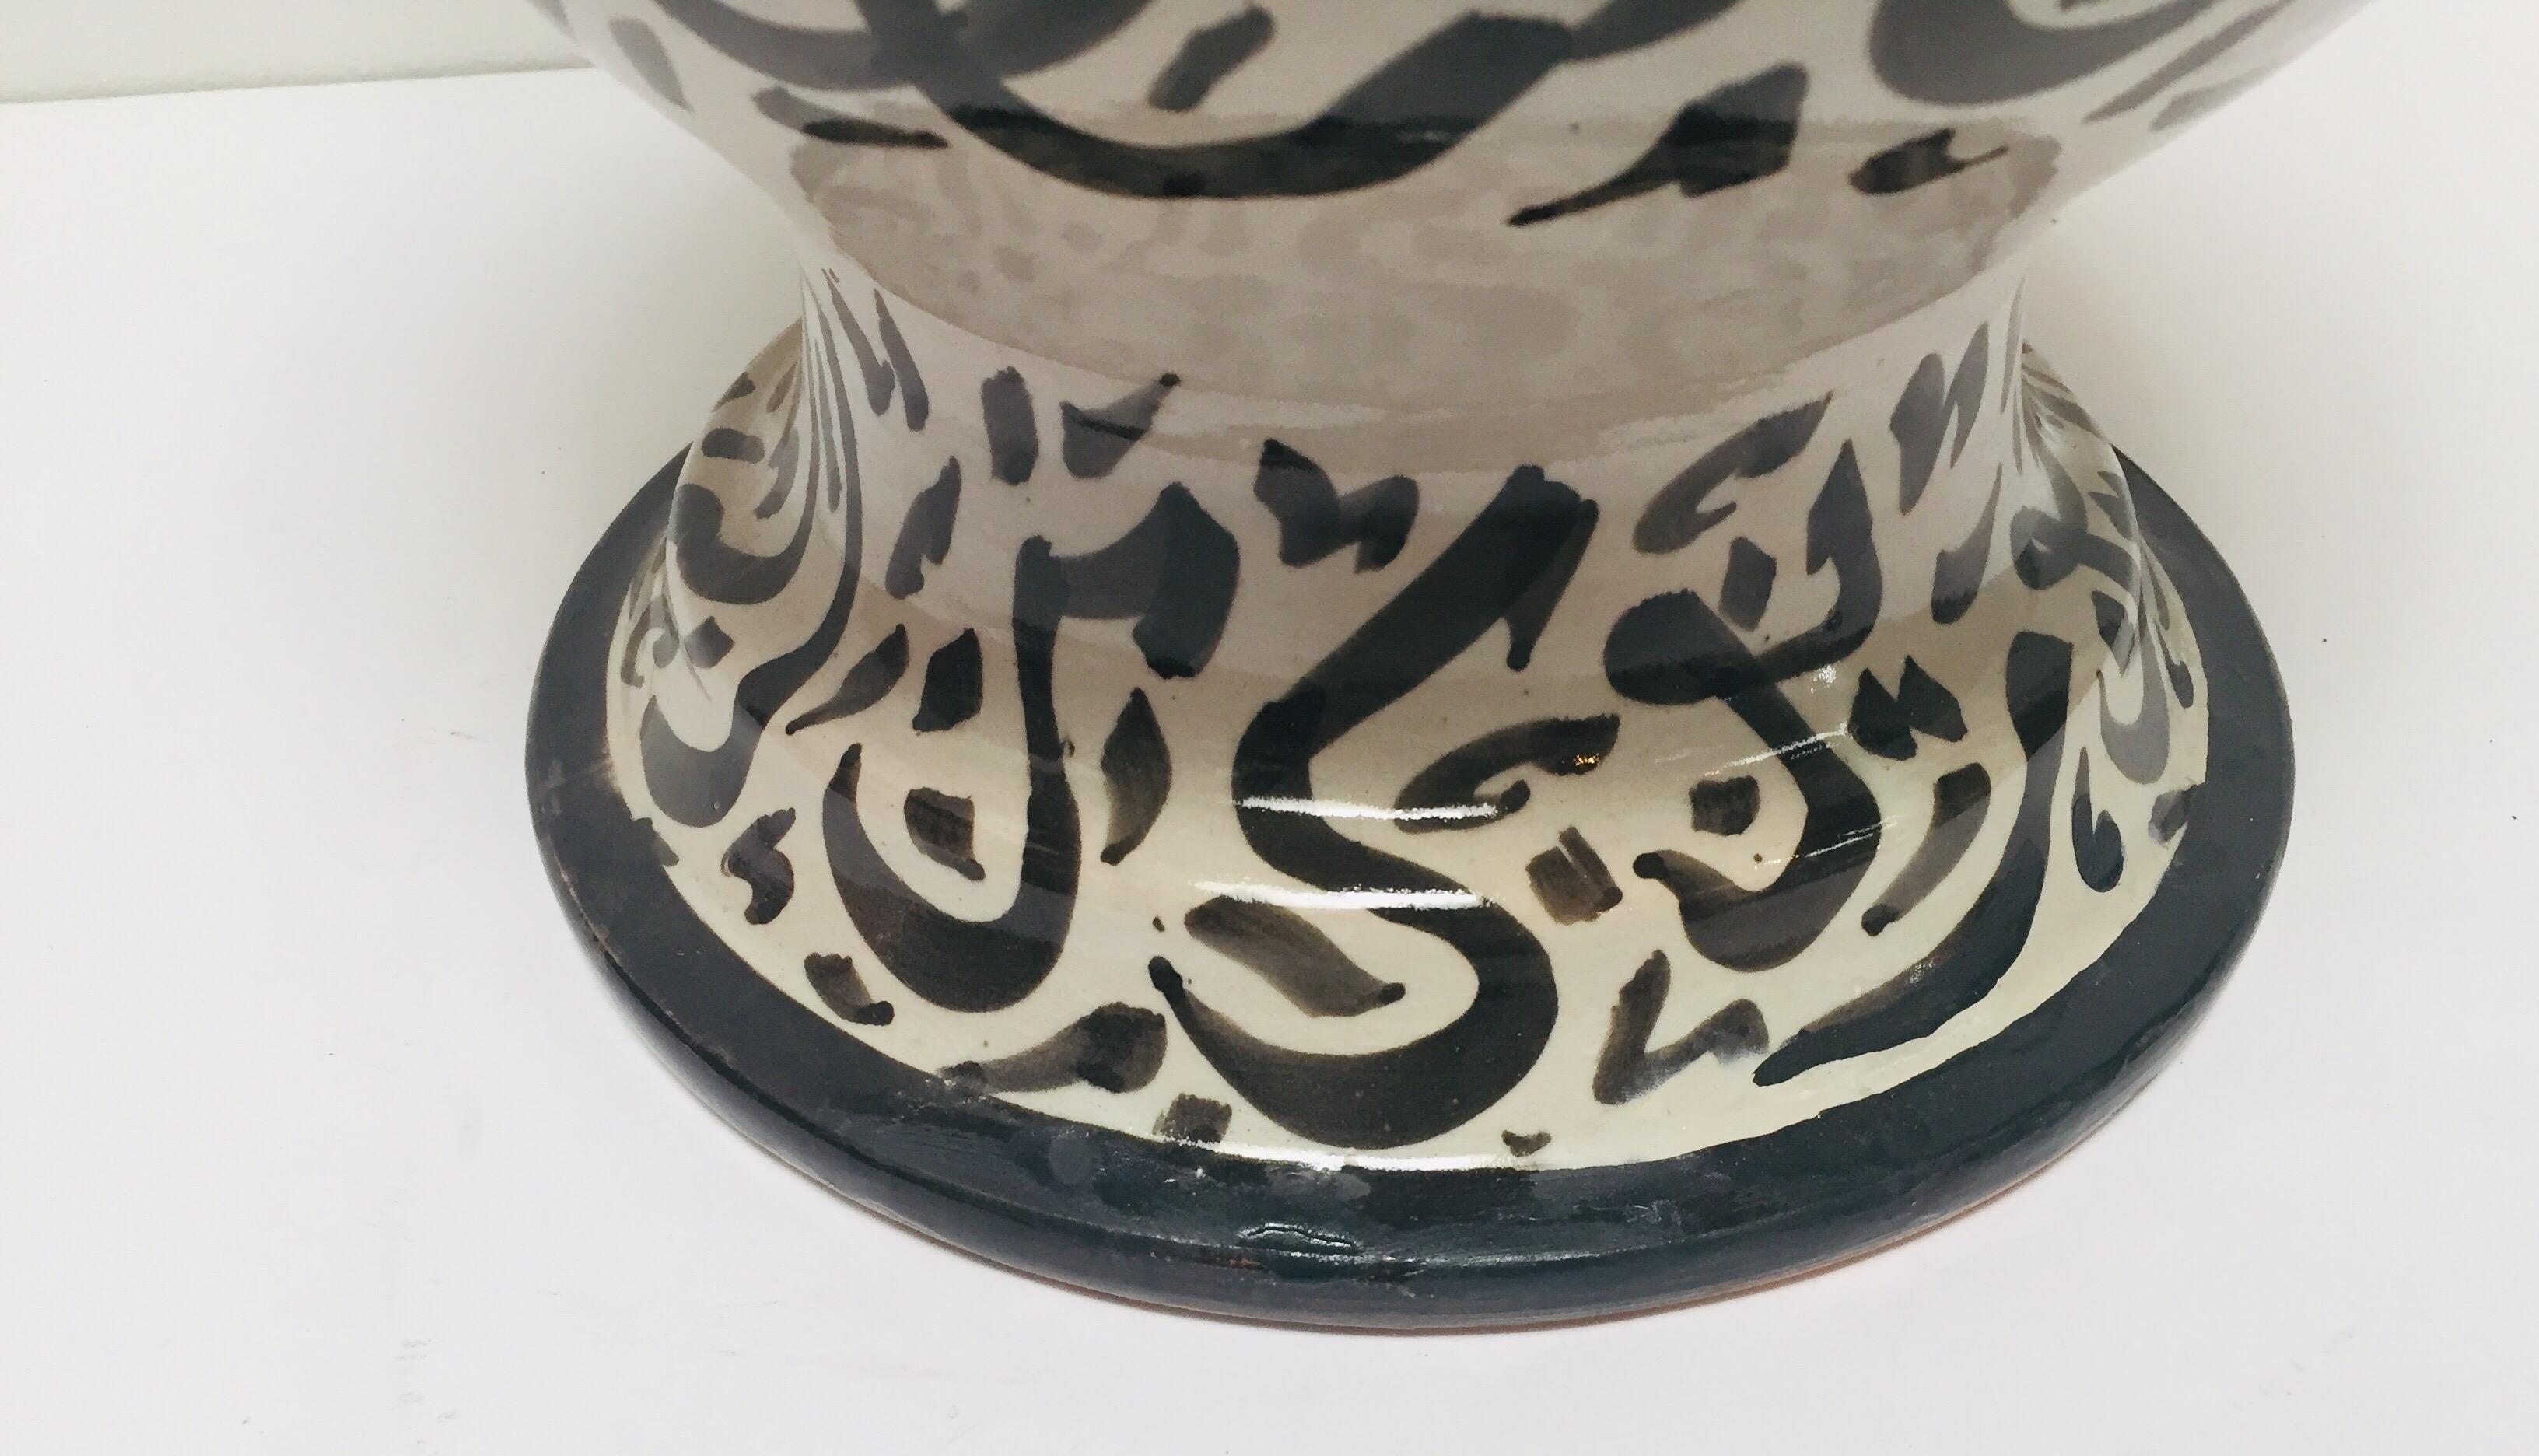 Large Moorish Glazed Ceramic Vase with Arabic Calligraphy Black Writing Fez For Sale 6